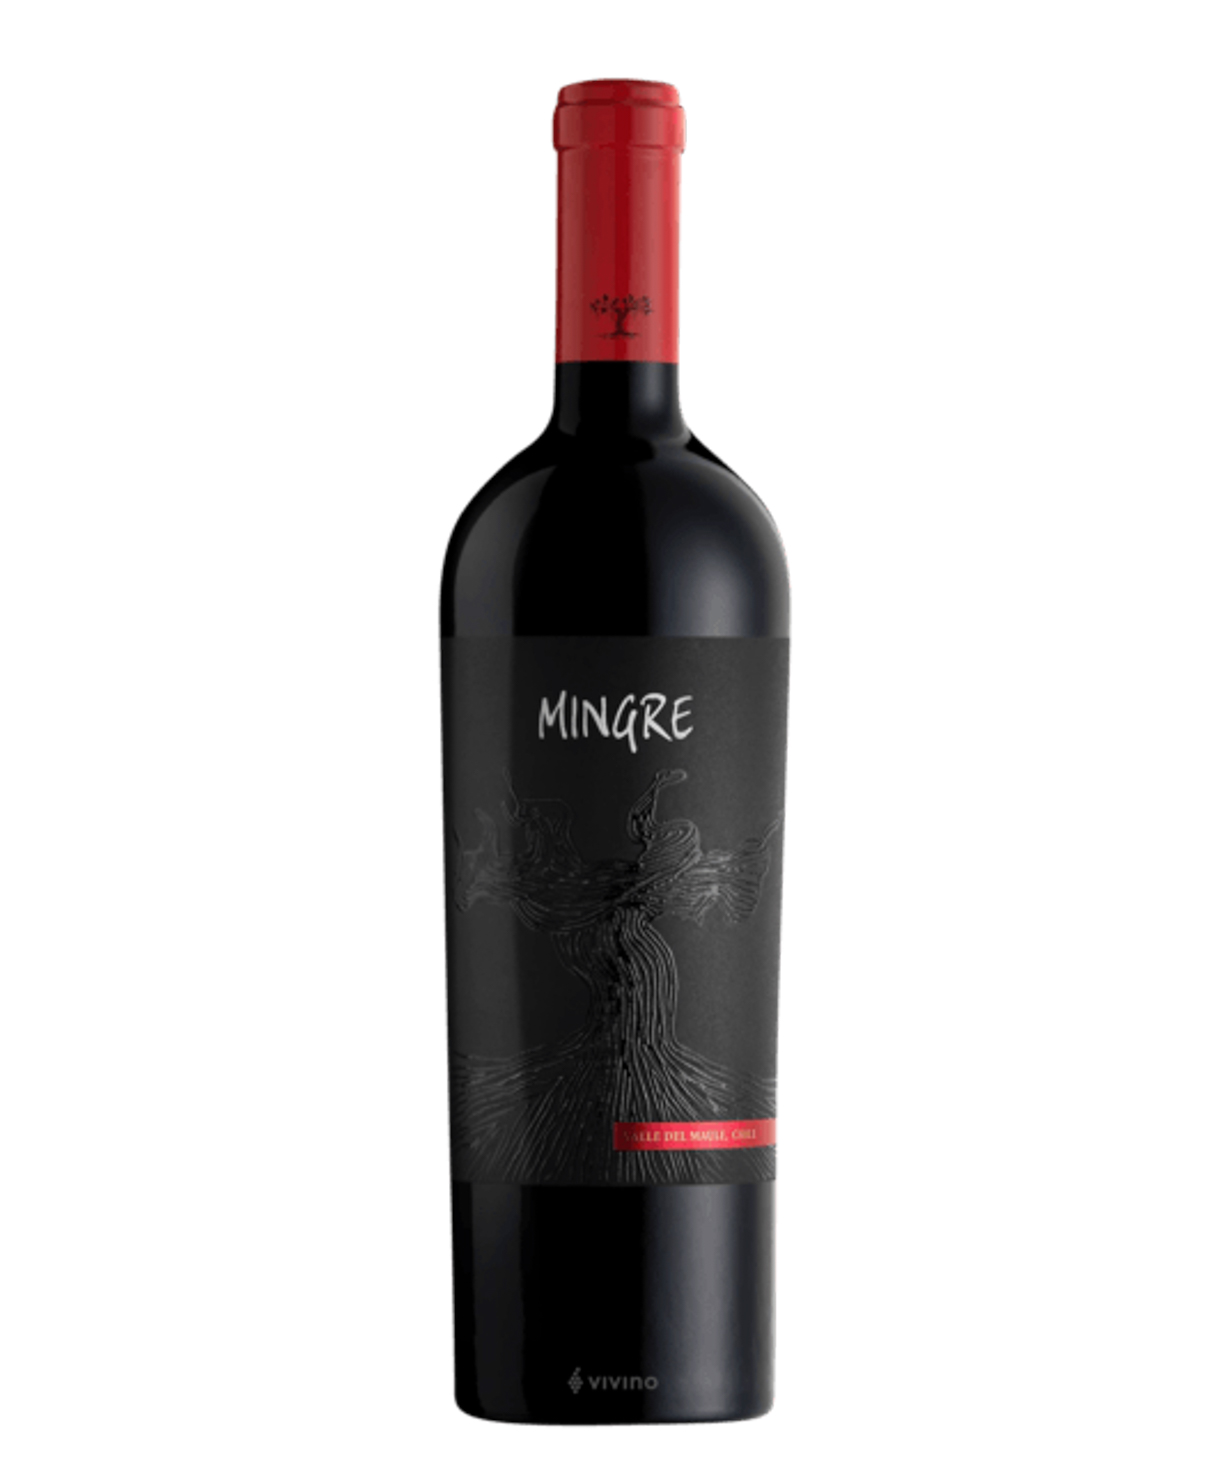 Գինի «J. Bouchon Mingre Maule Valley» կարմիր, չոր 750մլ